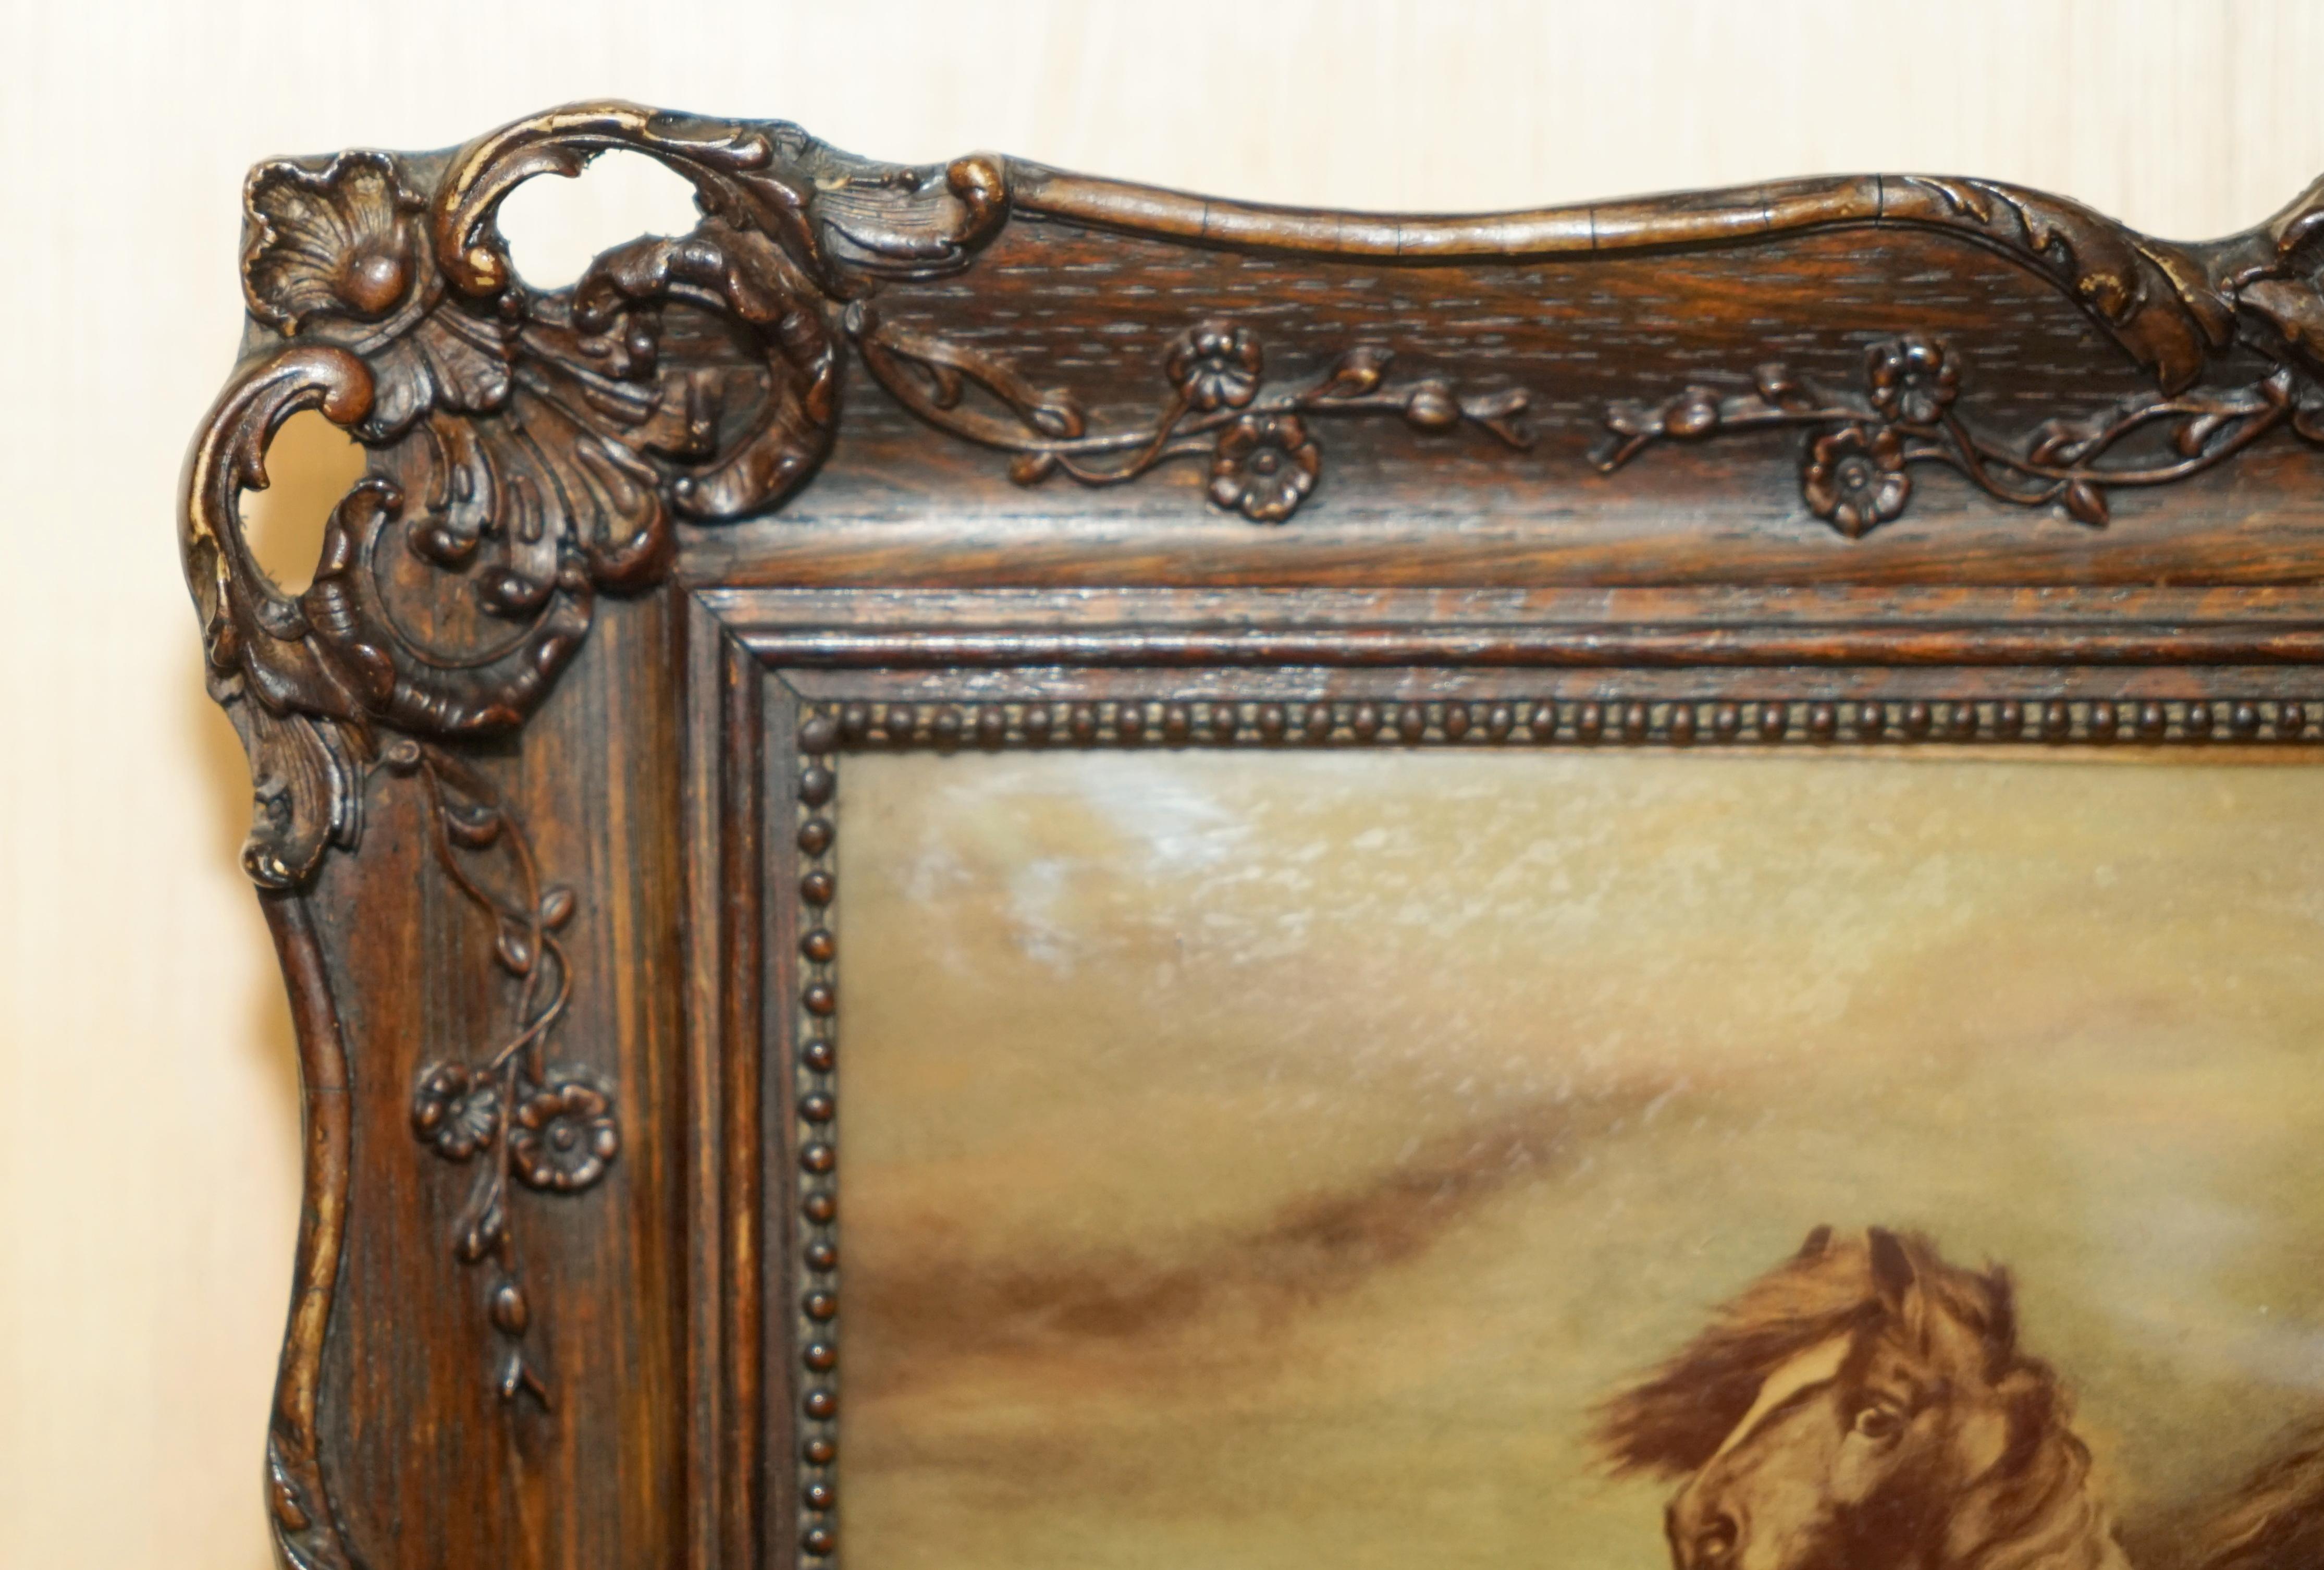 Royal House Antiques

The House Antiques a le plaisir de proposer à la vente l'un des deux tableaux anciens en bois sculpté à la main de l'époque victorienne représentant des chevaux. 

Veuillez noter que les frais de livraison indiqués ne sont